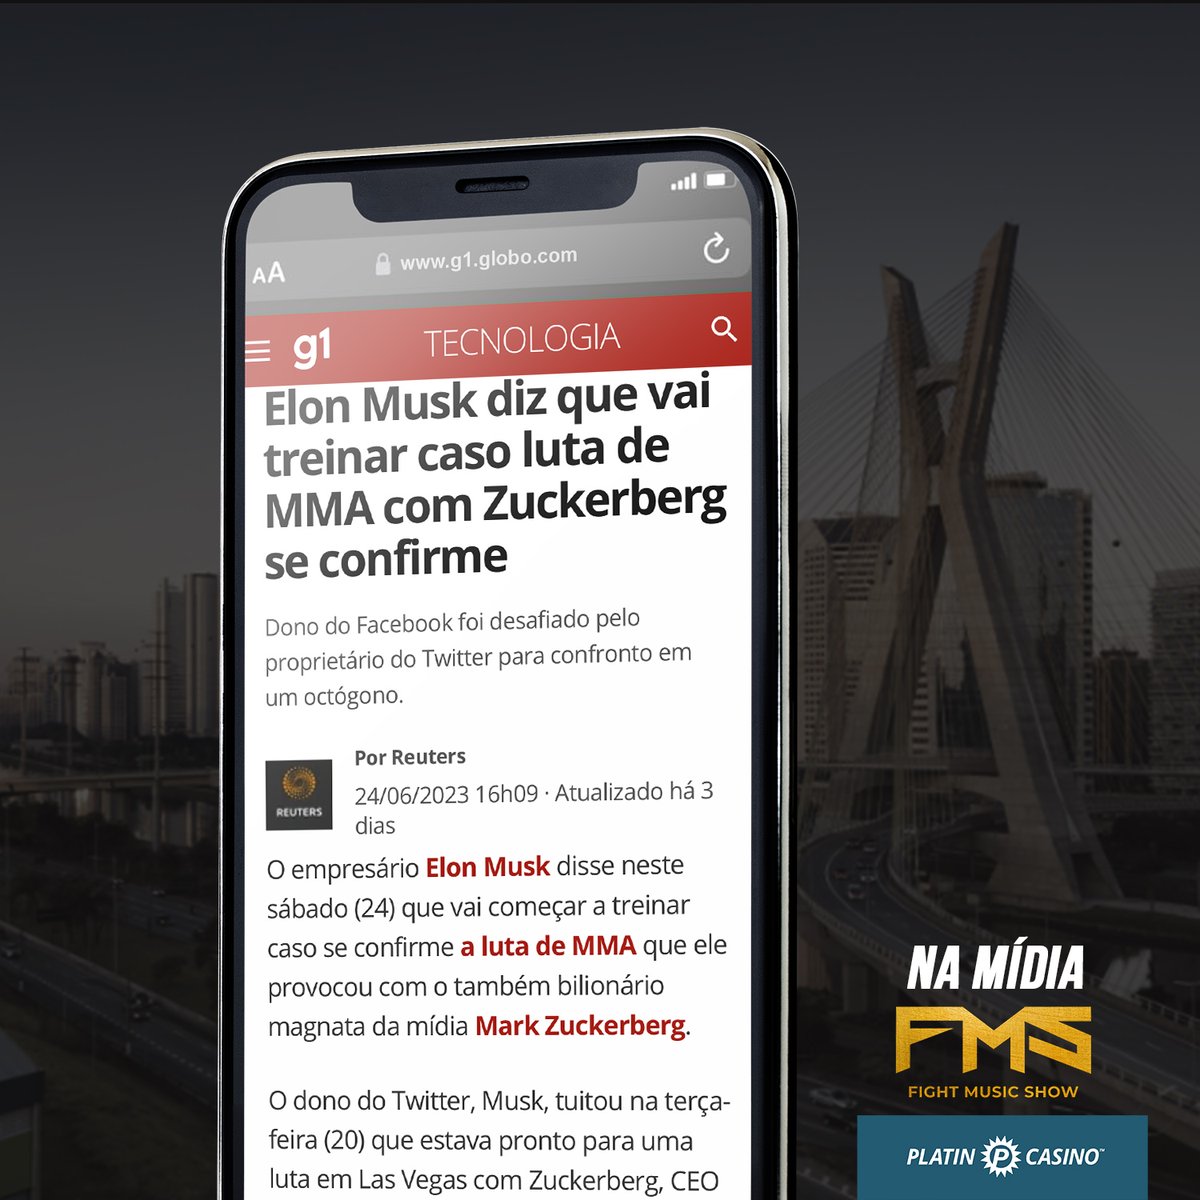 ‘Elon Musk diz que vai treinar caso luta de MMA com Zuckerberg se confirme’
➡ Matéria: @g1  - O Portal de Notícias da globo

🔗 Link: g1.globo.com/mundo/noticia/…

@Platincasino_BR | @Platincasino

#fms #FightMusicShow #news #aporradavaicantar #FMS3 #metropoles